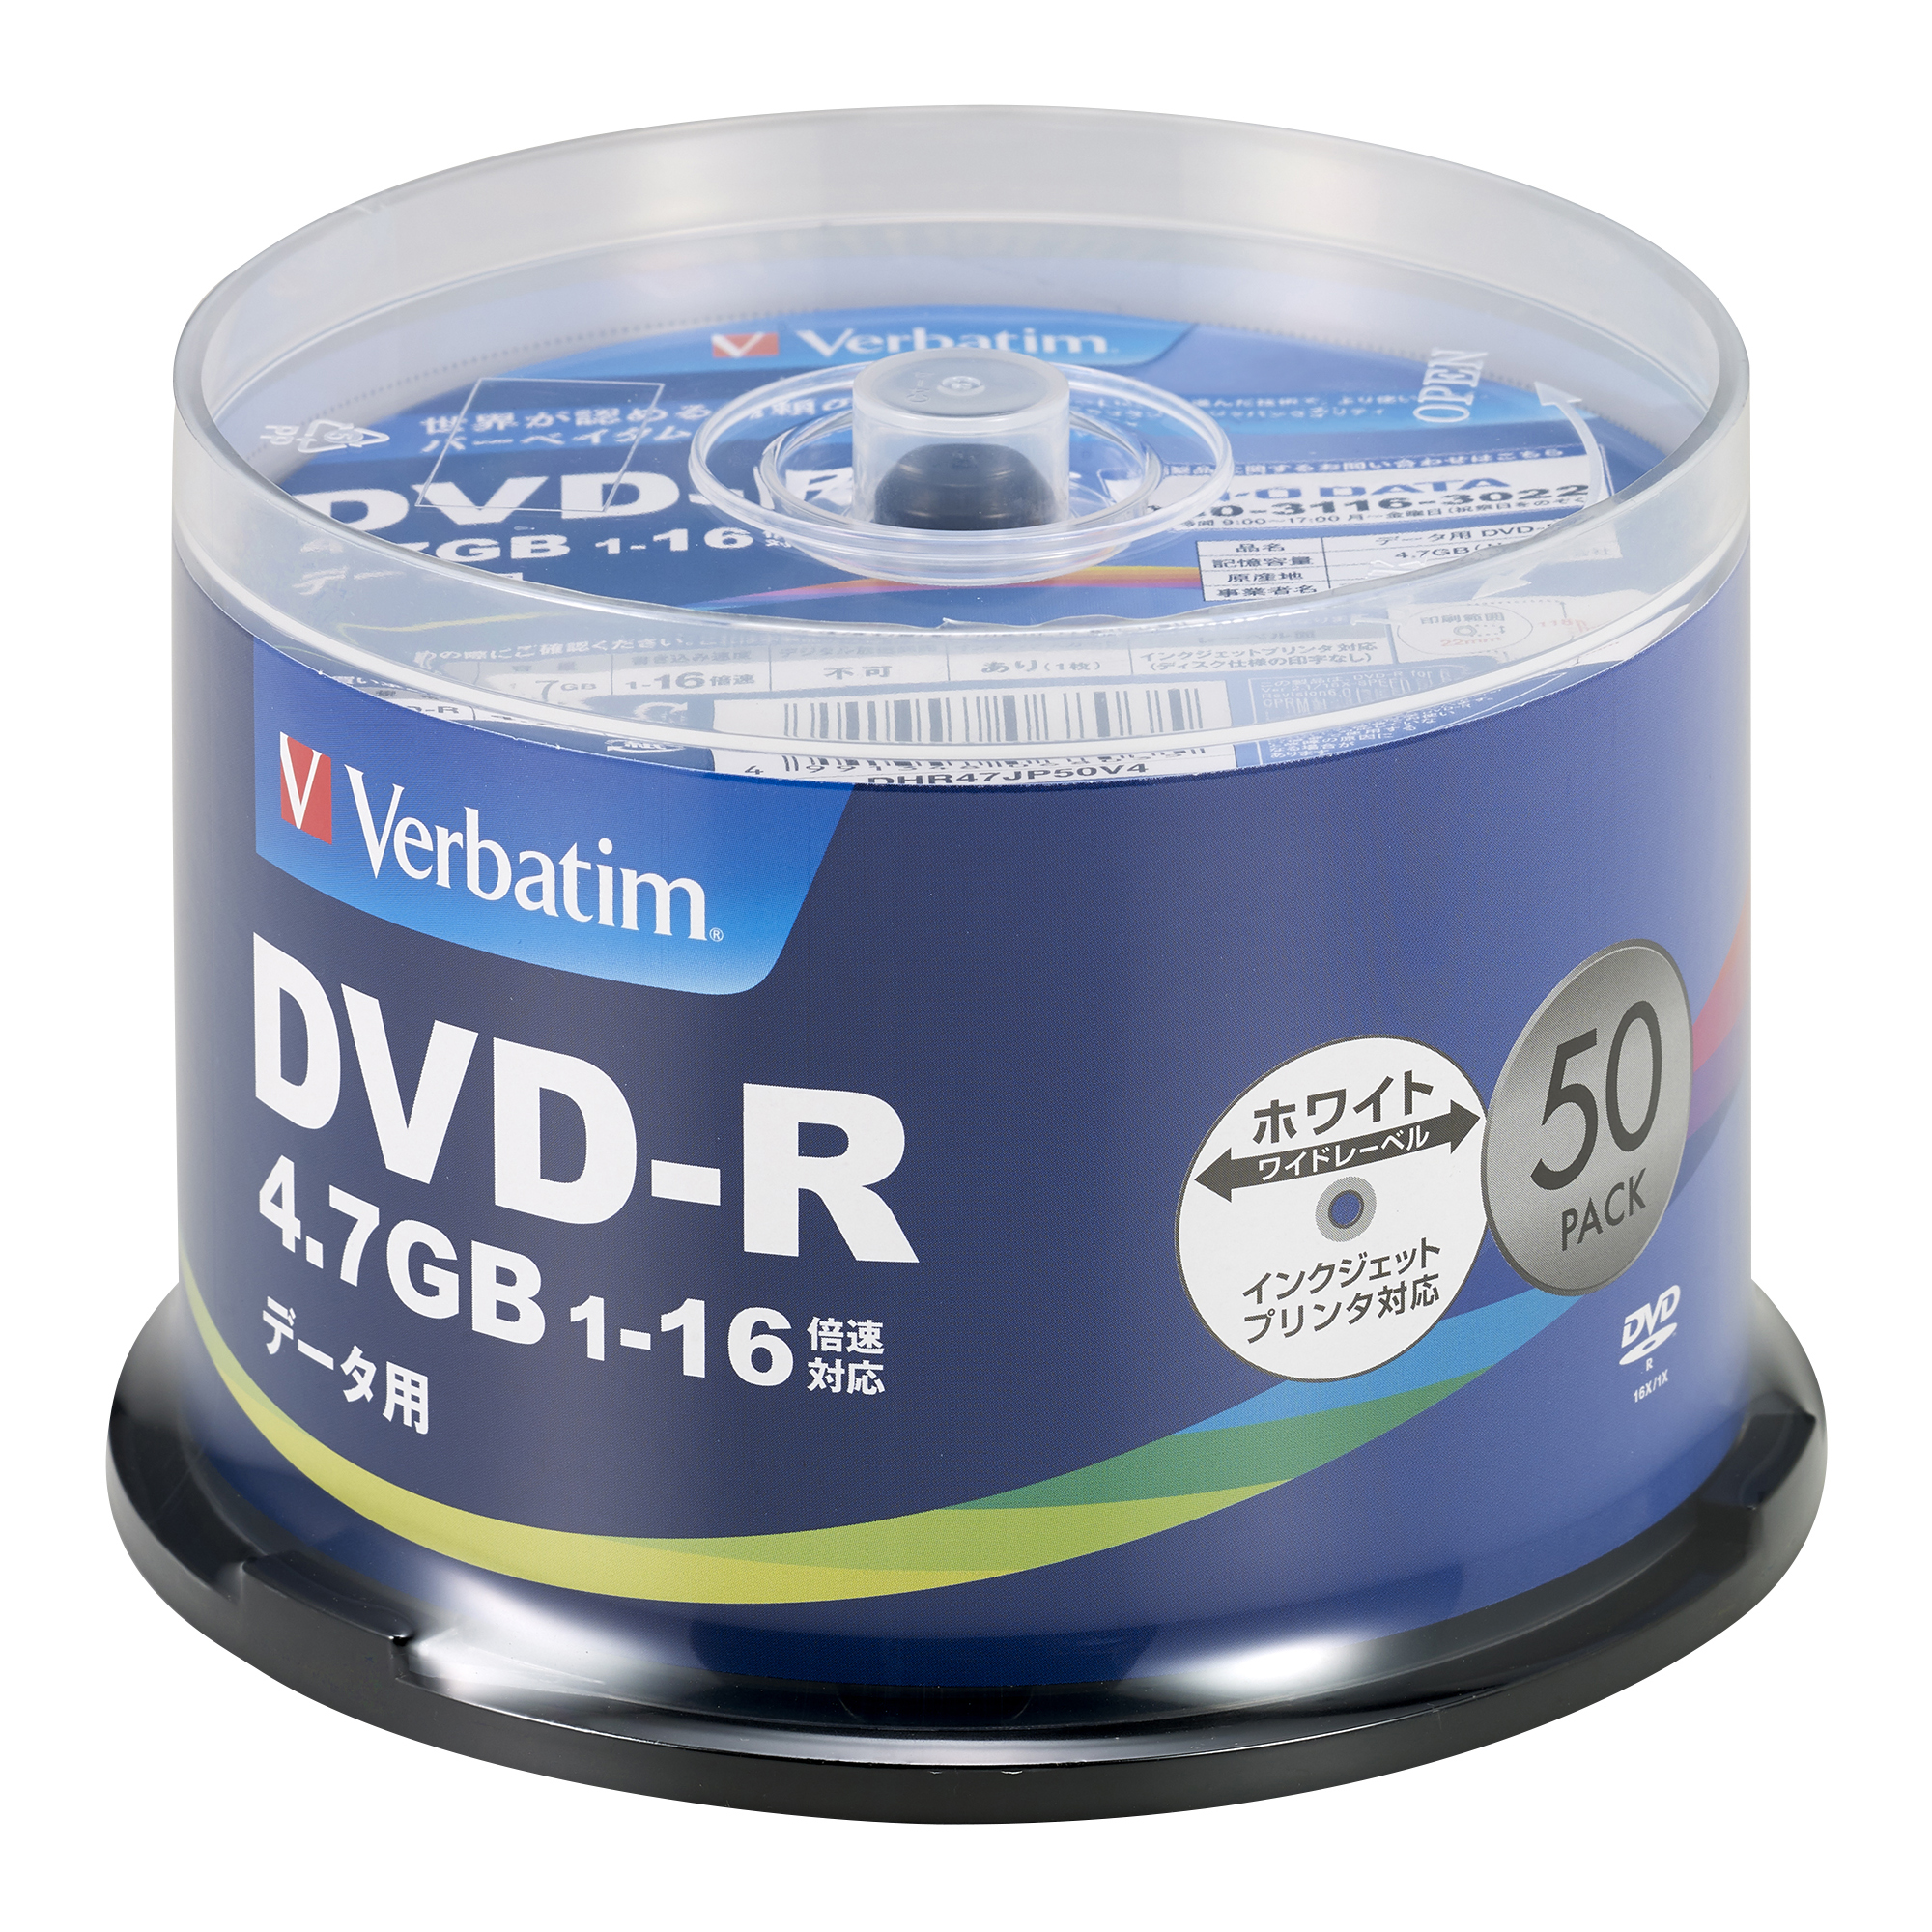 バーベイタム DHR47JP50V4 データ用16倍速対応DVD-R 50枚パック 4.7GB ホワイトプリンタブルVerbatim[DHR47JP50V4] 返品種別A